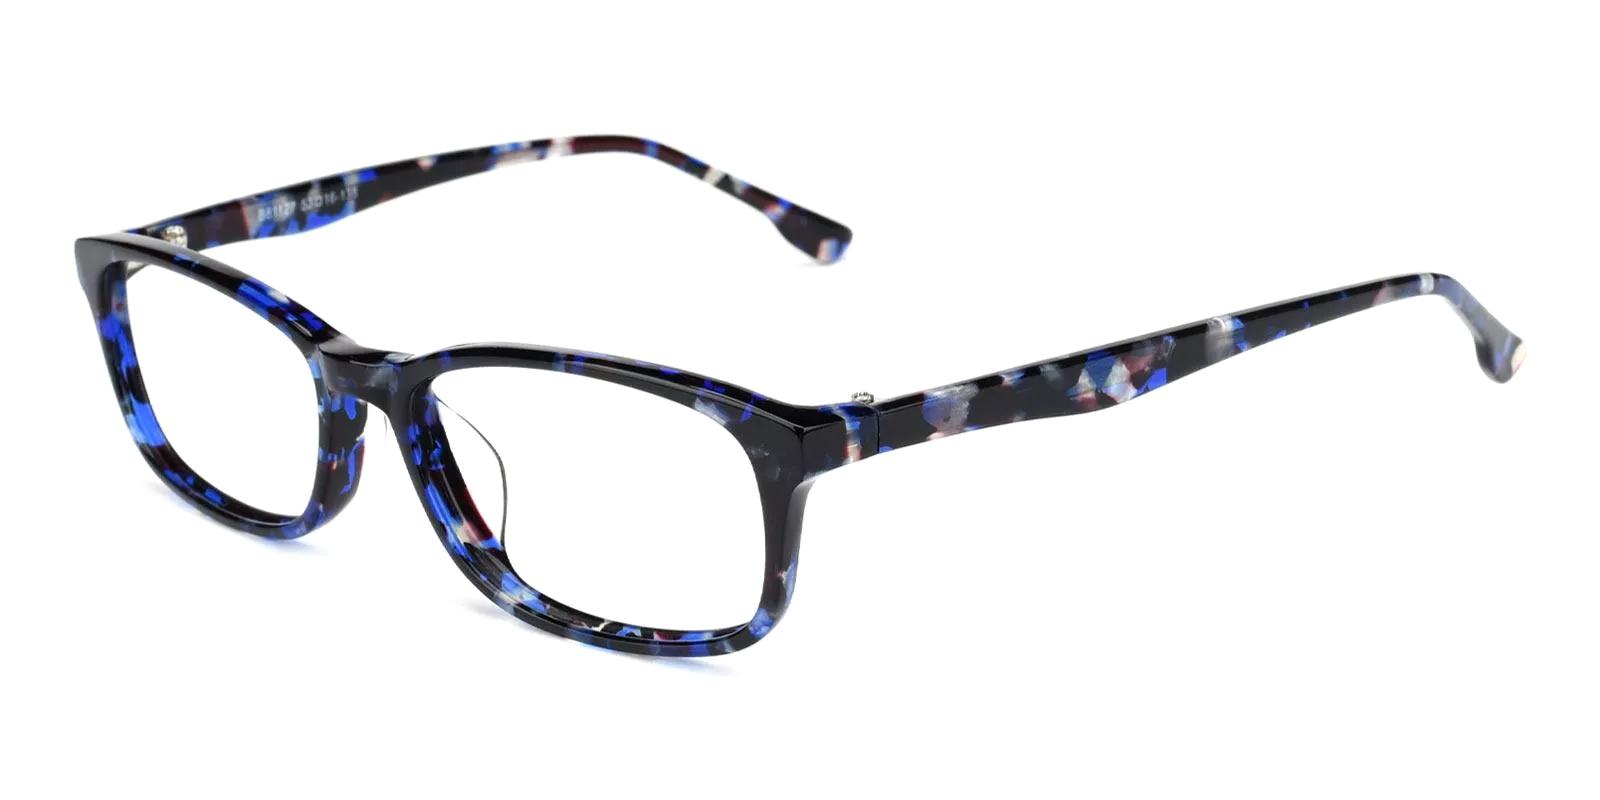 Tendant Blue Acetate Eyeglasses , UniversalBridgeFit Frames from ABBE Glasses